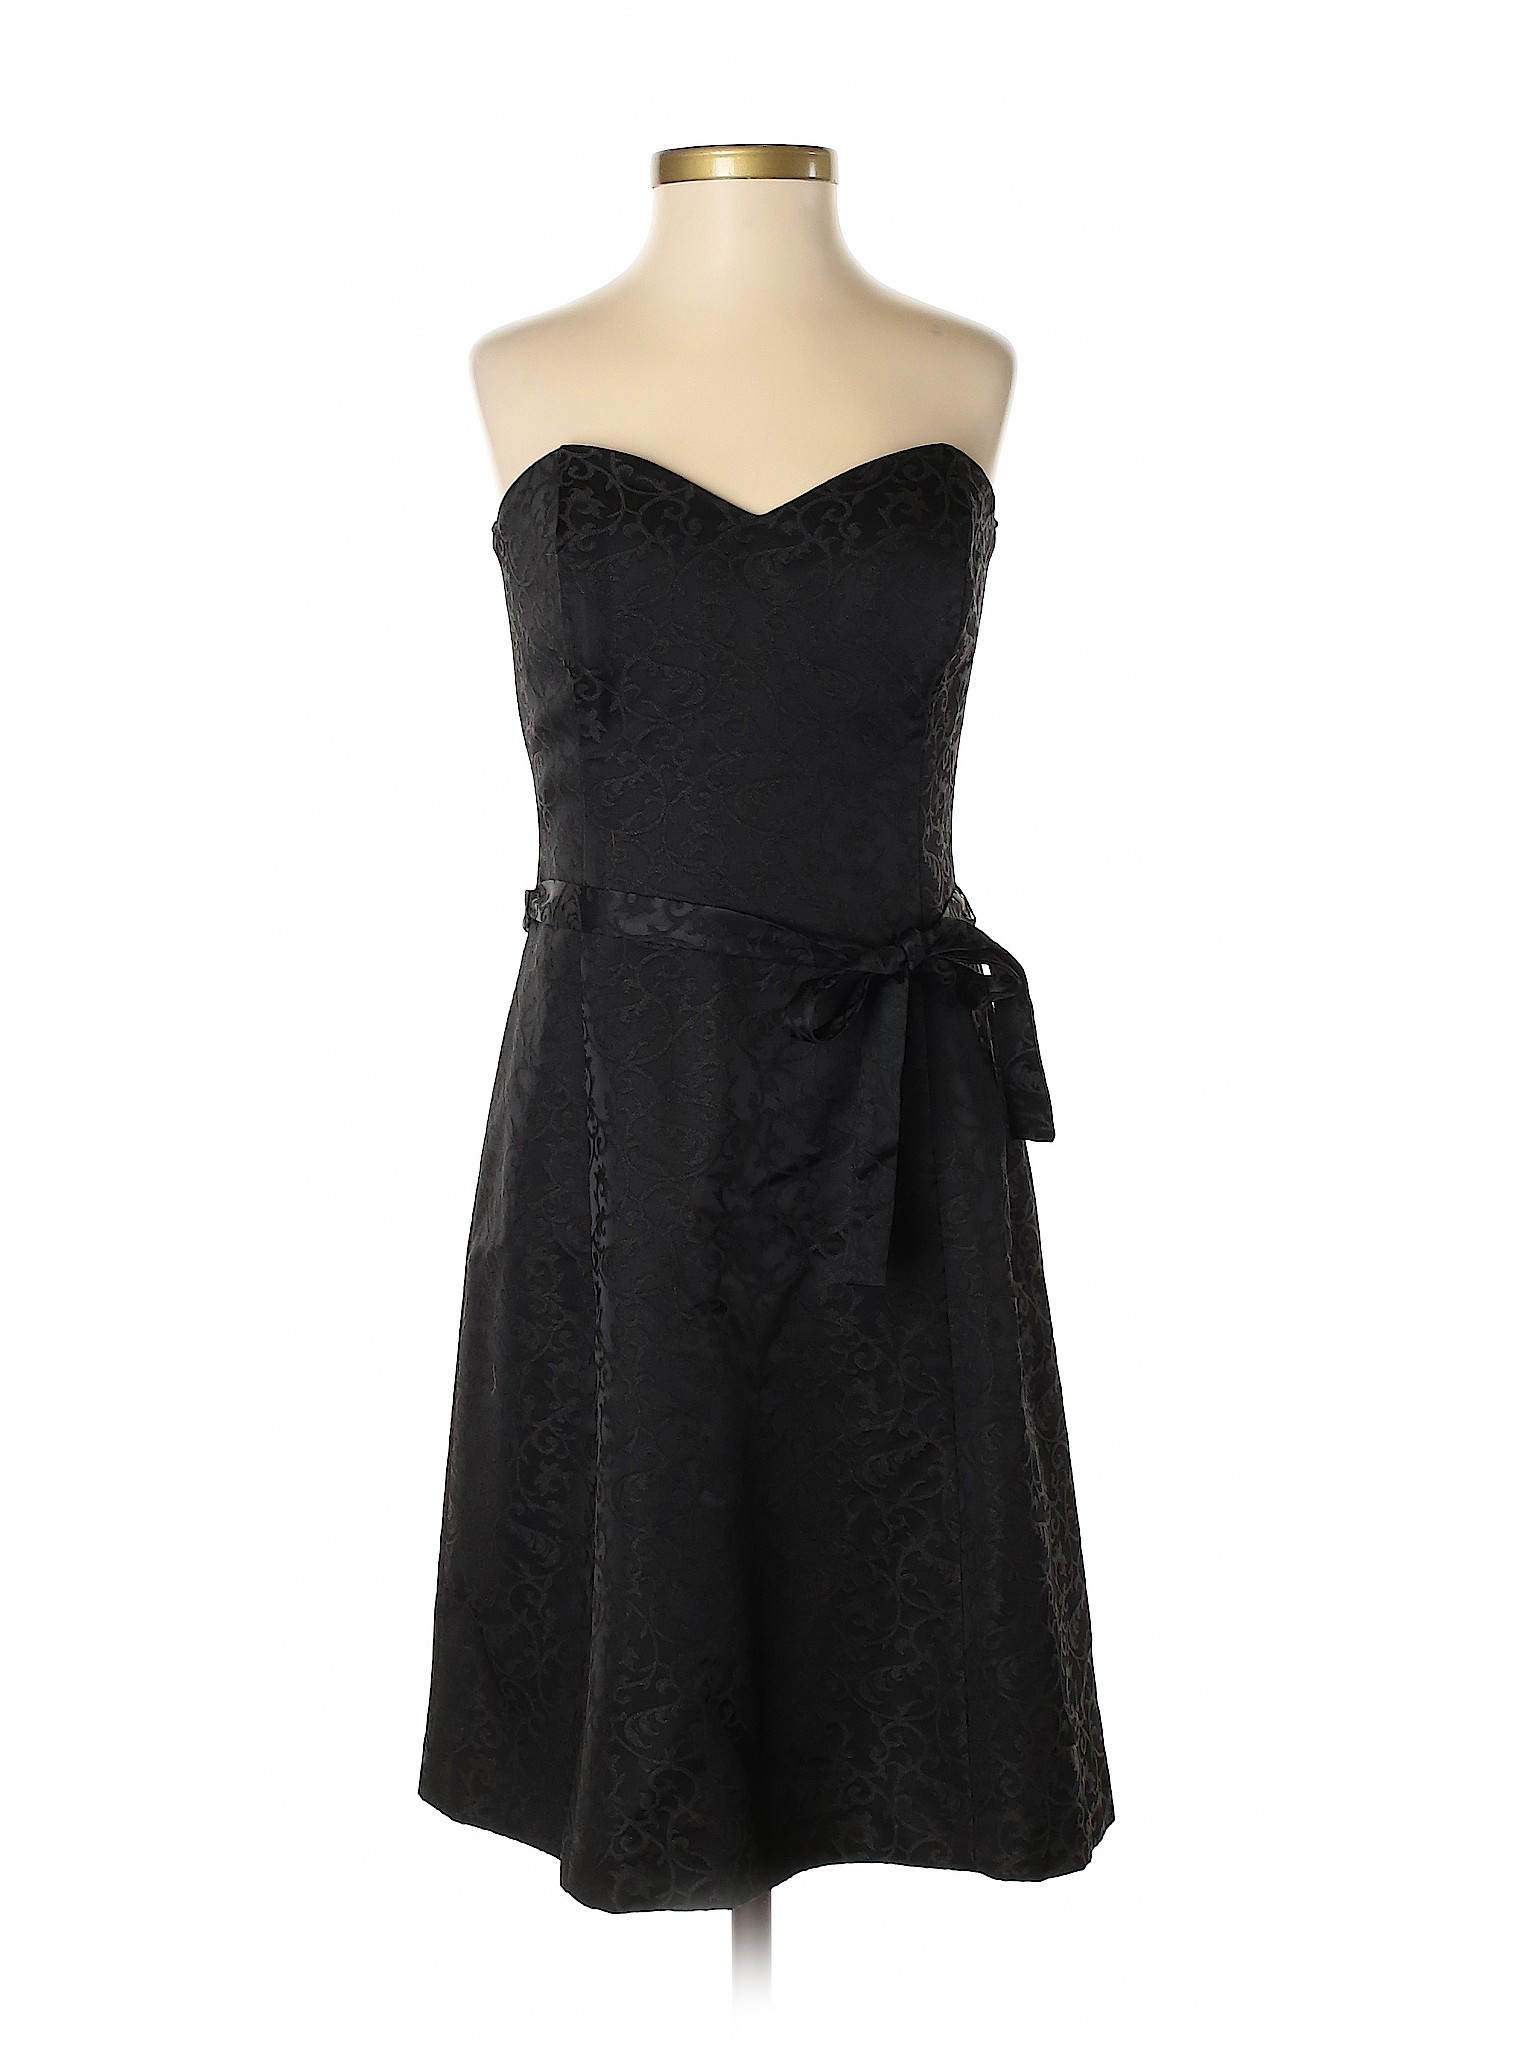 White House Black Market Women Black Cocktail Dress 0 | eBay